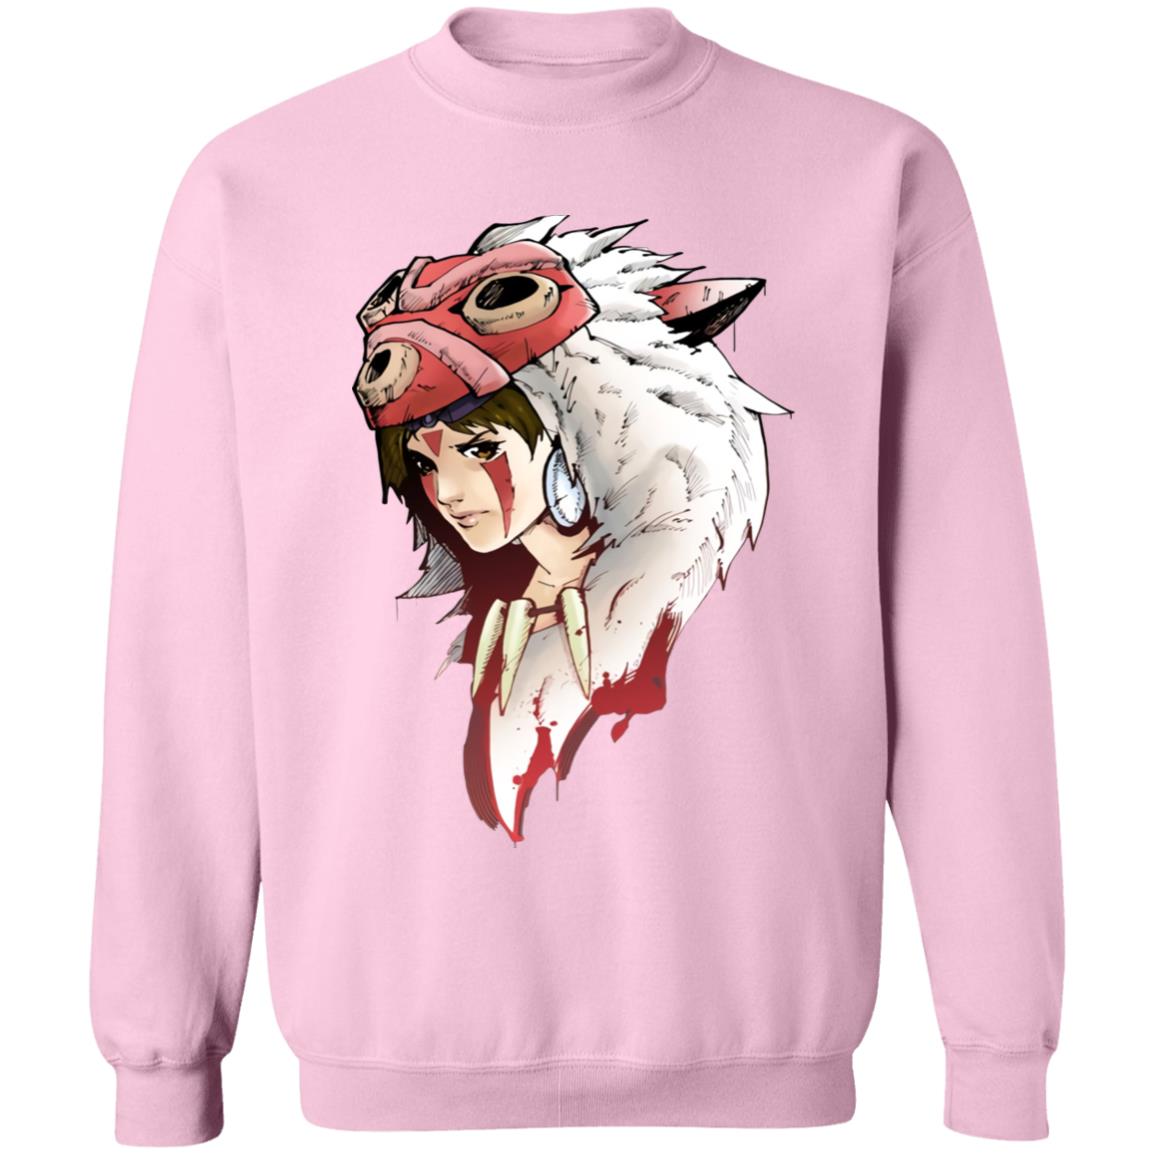 Angry Princess Mononoke Sweatshirt